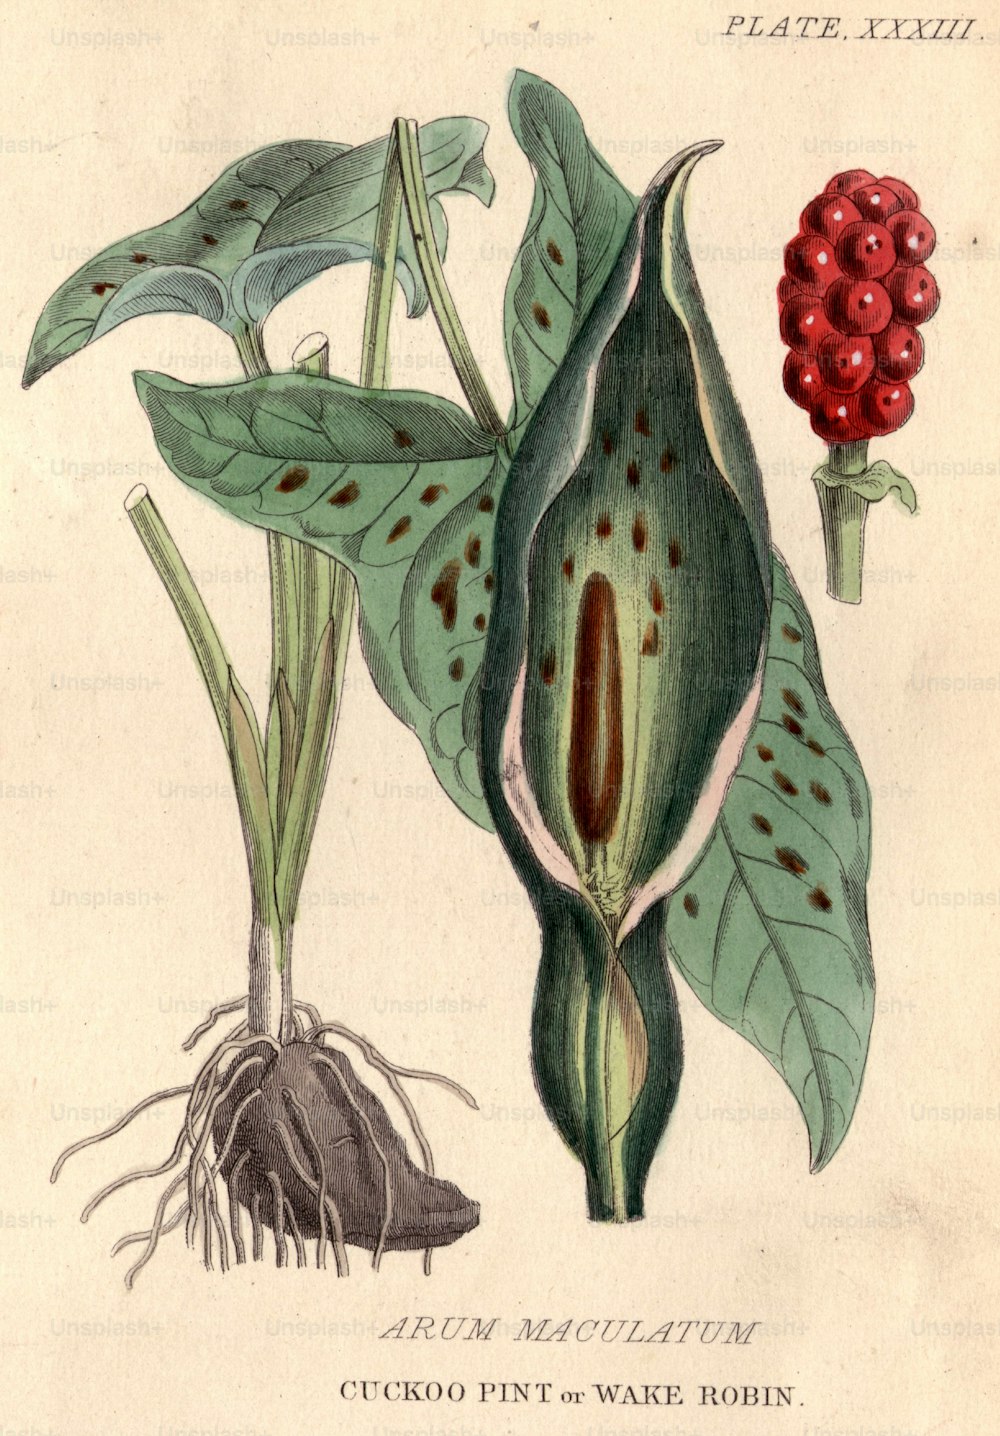 1800 circa: Arum maculatum, pinta di cuculo o pettirosso del risveglio, con le sue bacche rosse caratteristiche e altamente velenose.  (Foto di Hulton Archive/Getty Images)